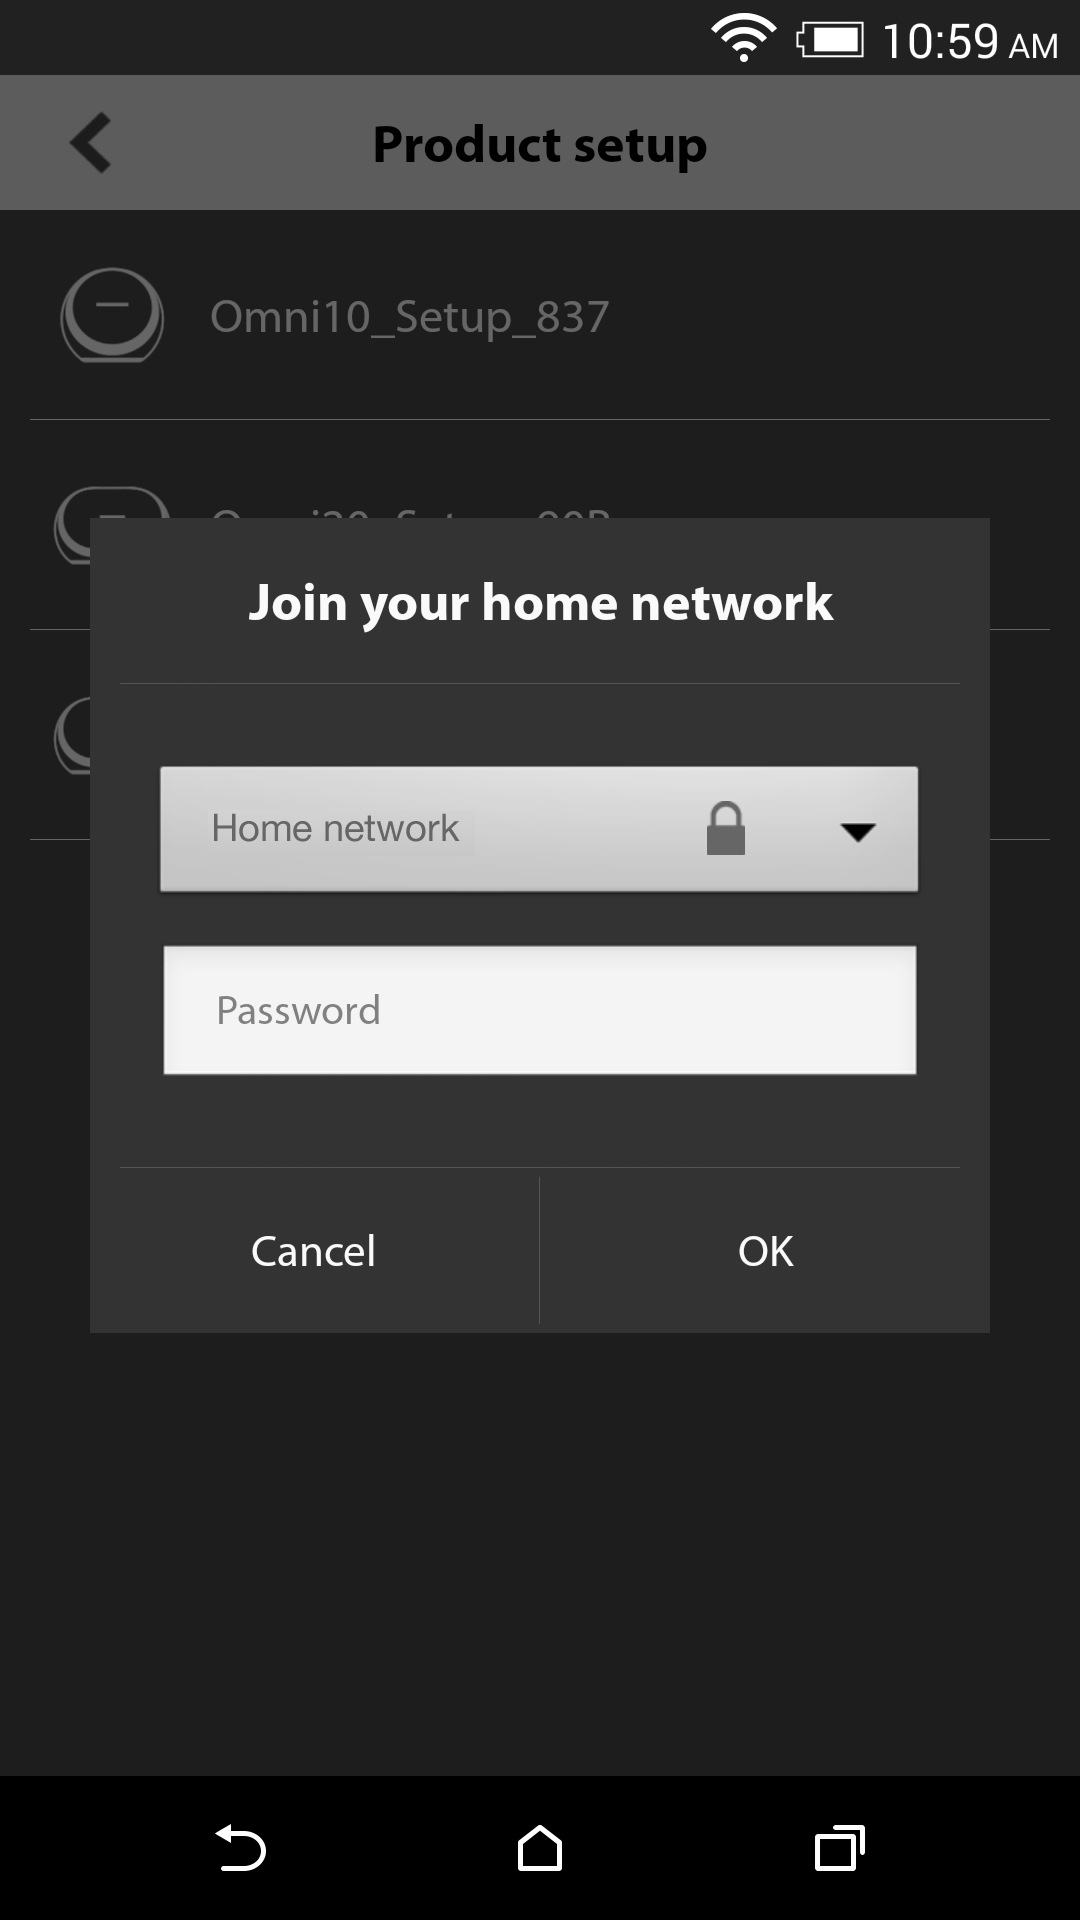 Selecteer uw thuisnetwerk uit het rolmenu met beschikbare netwerken. Selecteer vervolgens het lege veld en typ het wachtwoord in voor uw thuisnetwerk.